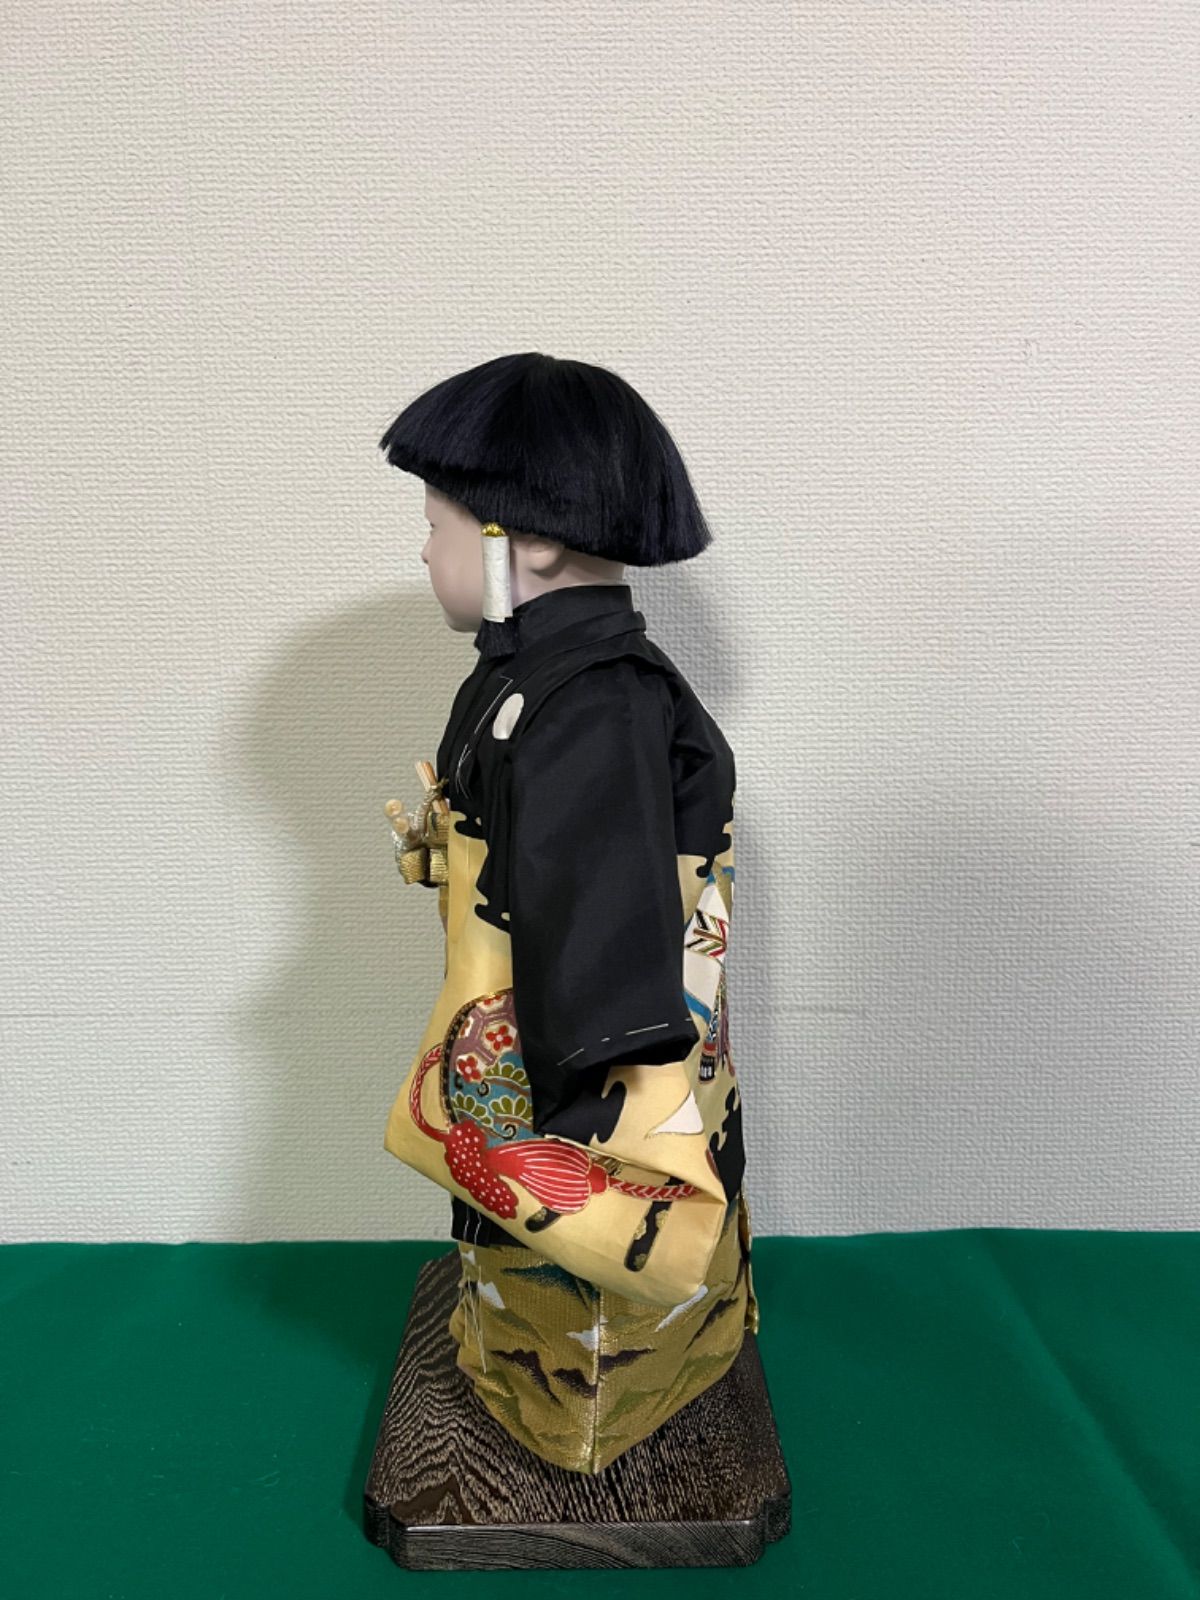 市松人形 京市松 平安錦染謹製 男の子 日本人形 正絹 京友禅 手縫い 